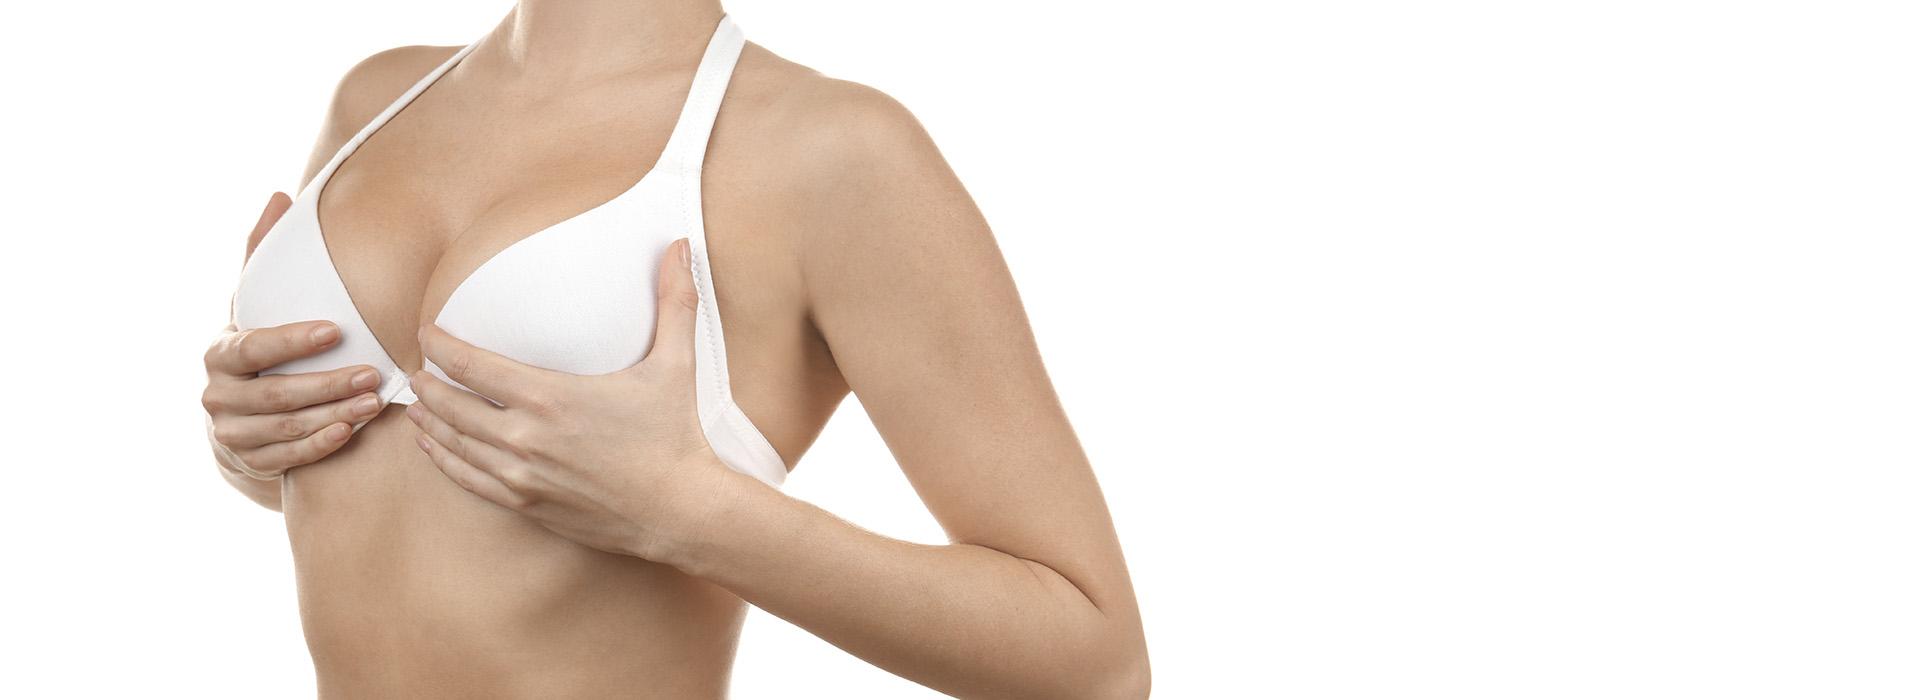 Conheça a técnica Dual Plane para implante mamário